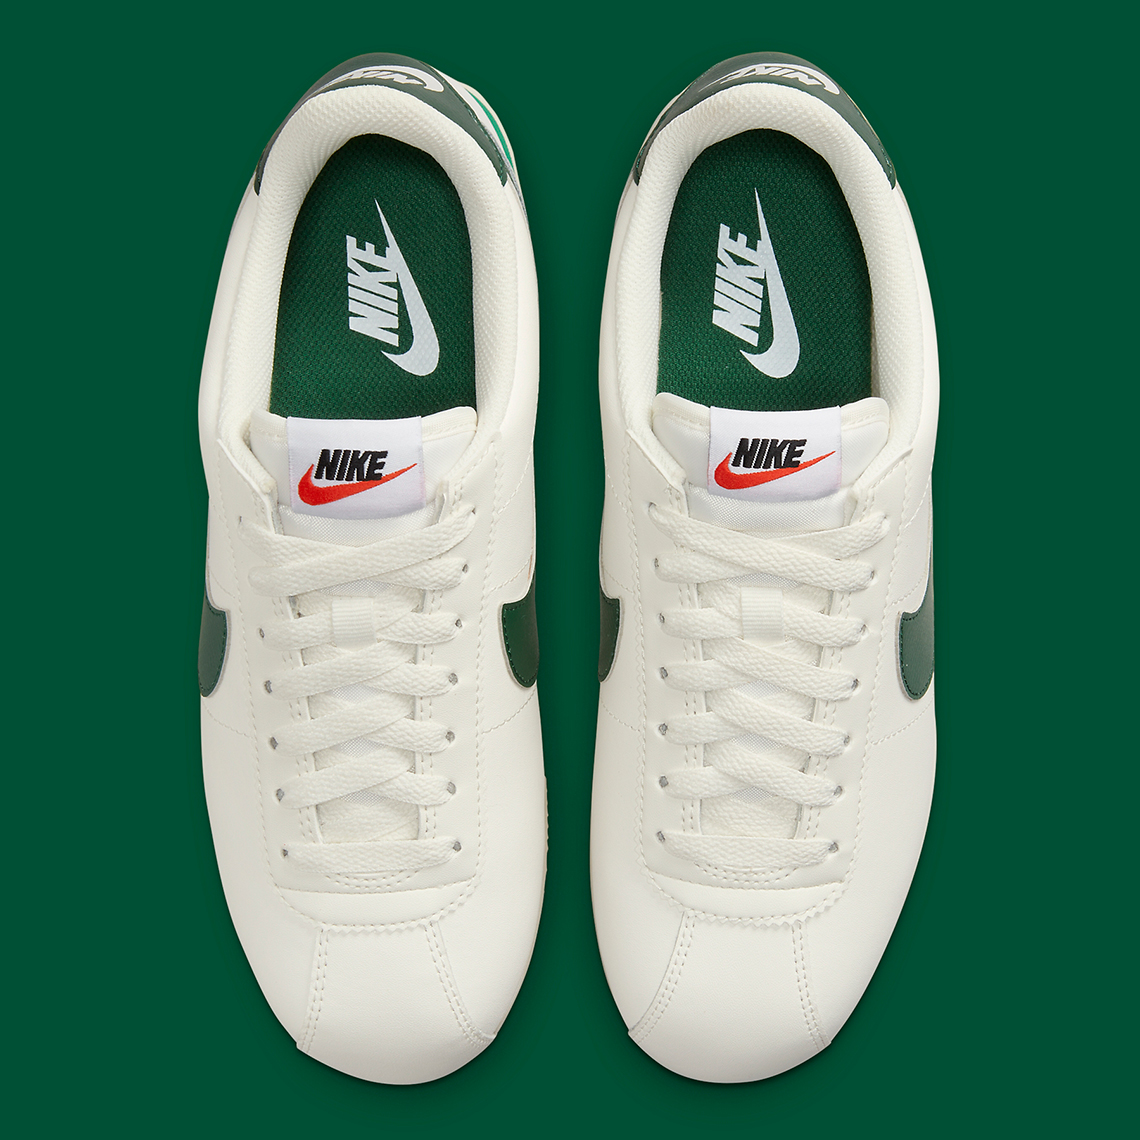 Nike Cortez White Green Nike Cortez White Green Dn1791 101 8